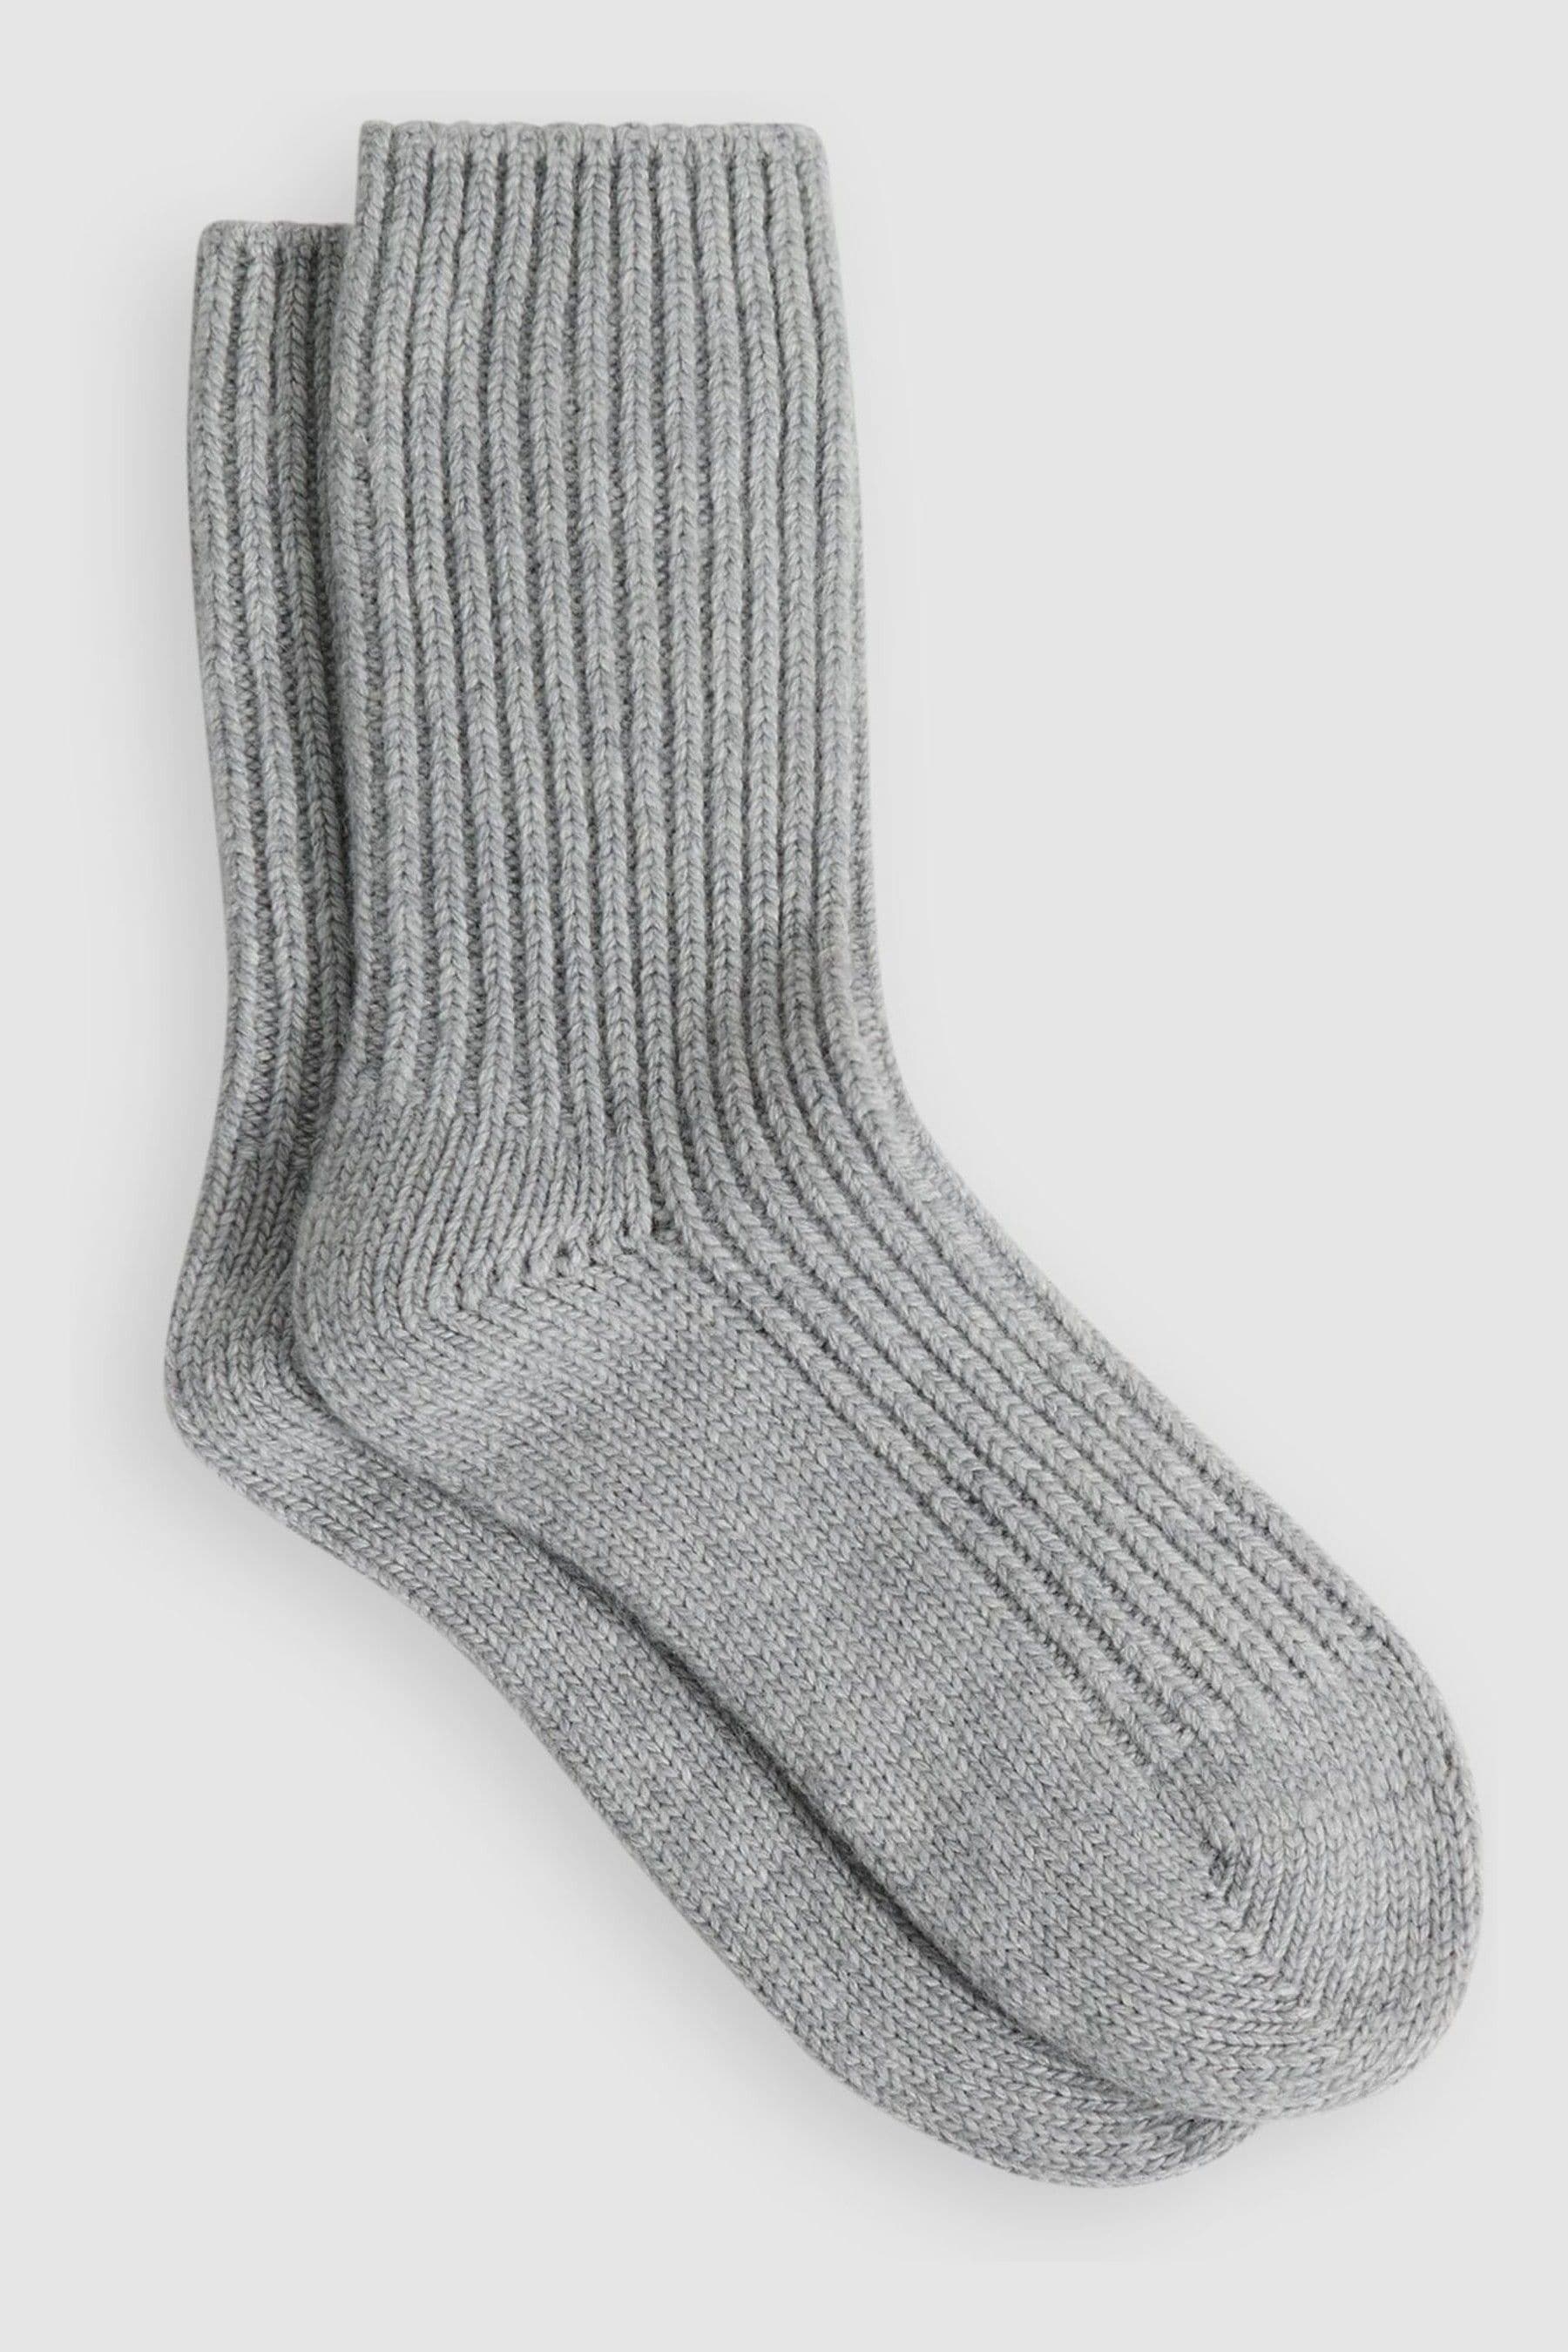 Reiss Carmen - Grey Wool Blend Ribbed Socks, Uk 3-5